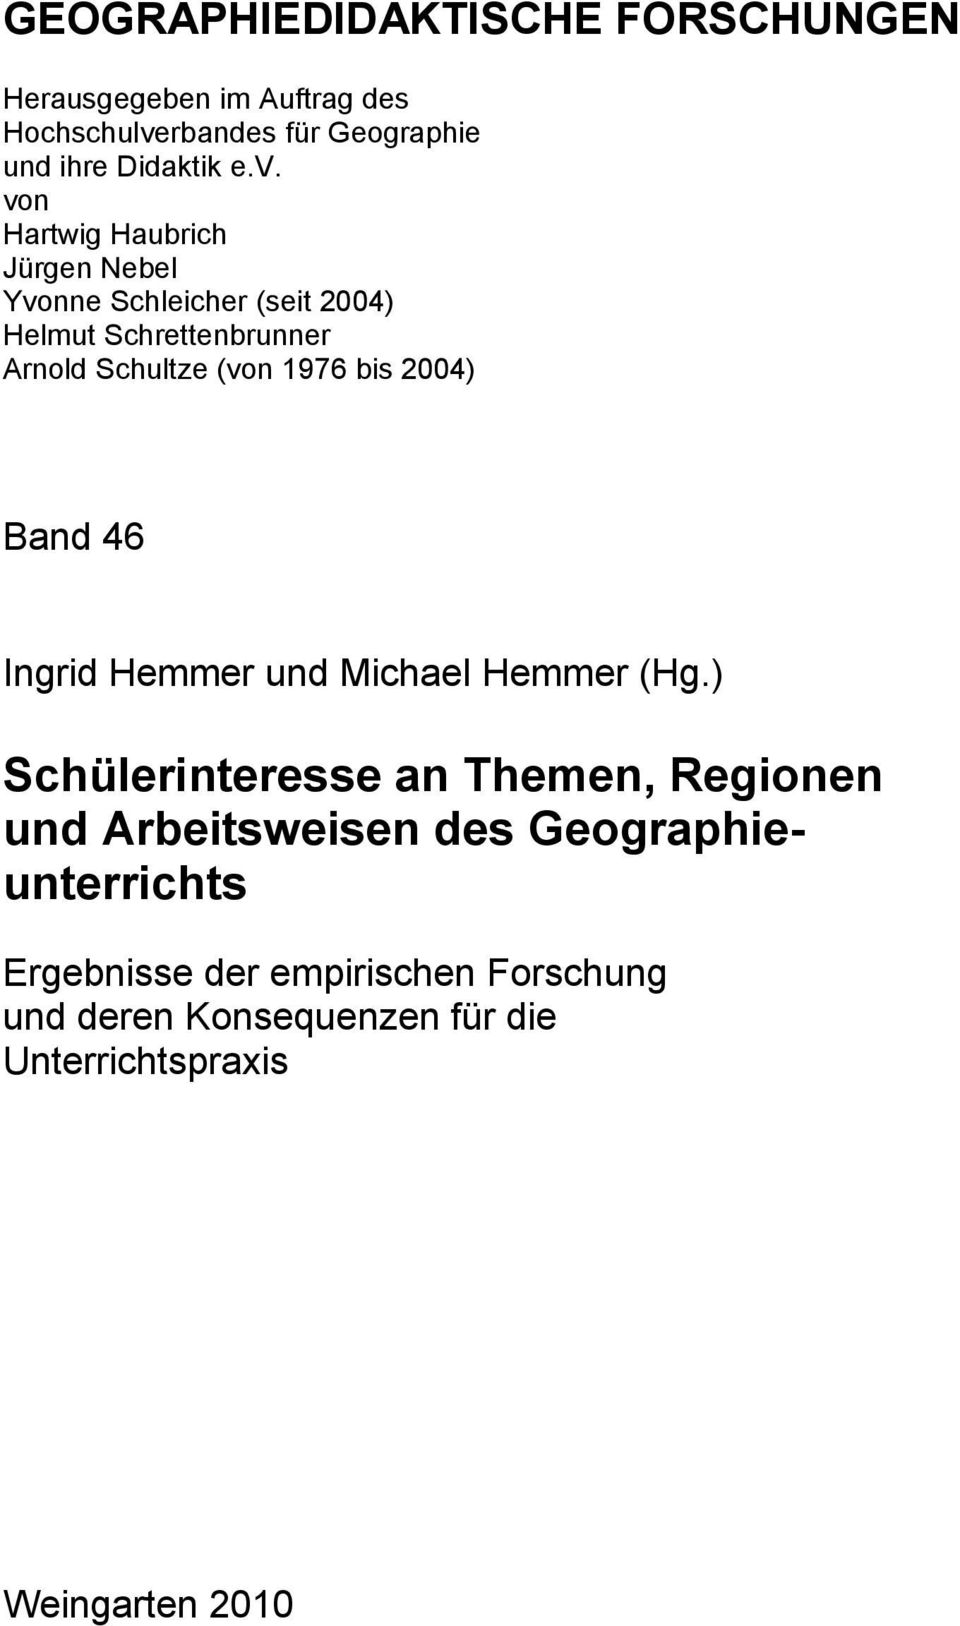 von Hartwig Haubrich Jürgen Nebel Yvonne Schleicher (seit 2004) Helmut Schrettenbrunner Arnold Schultze (von 1976 bis